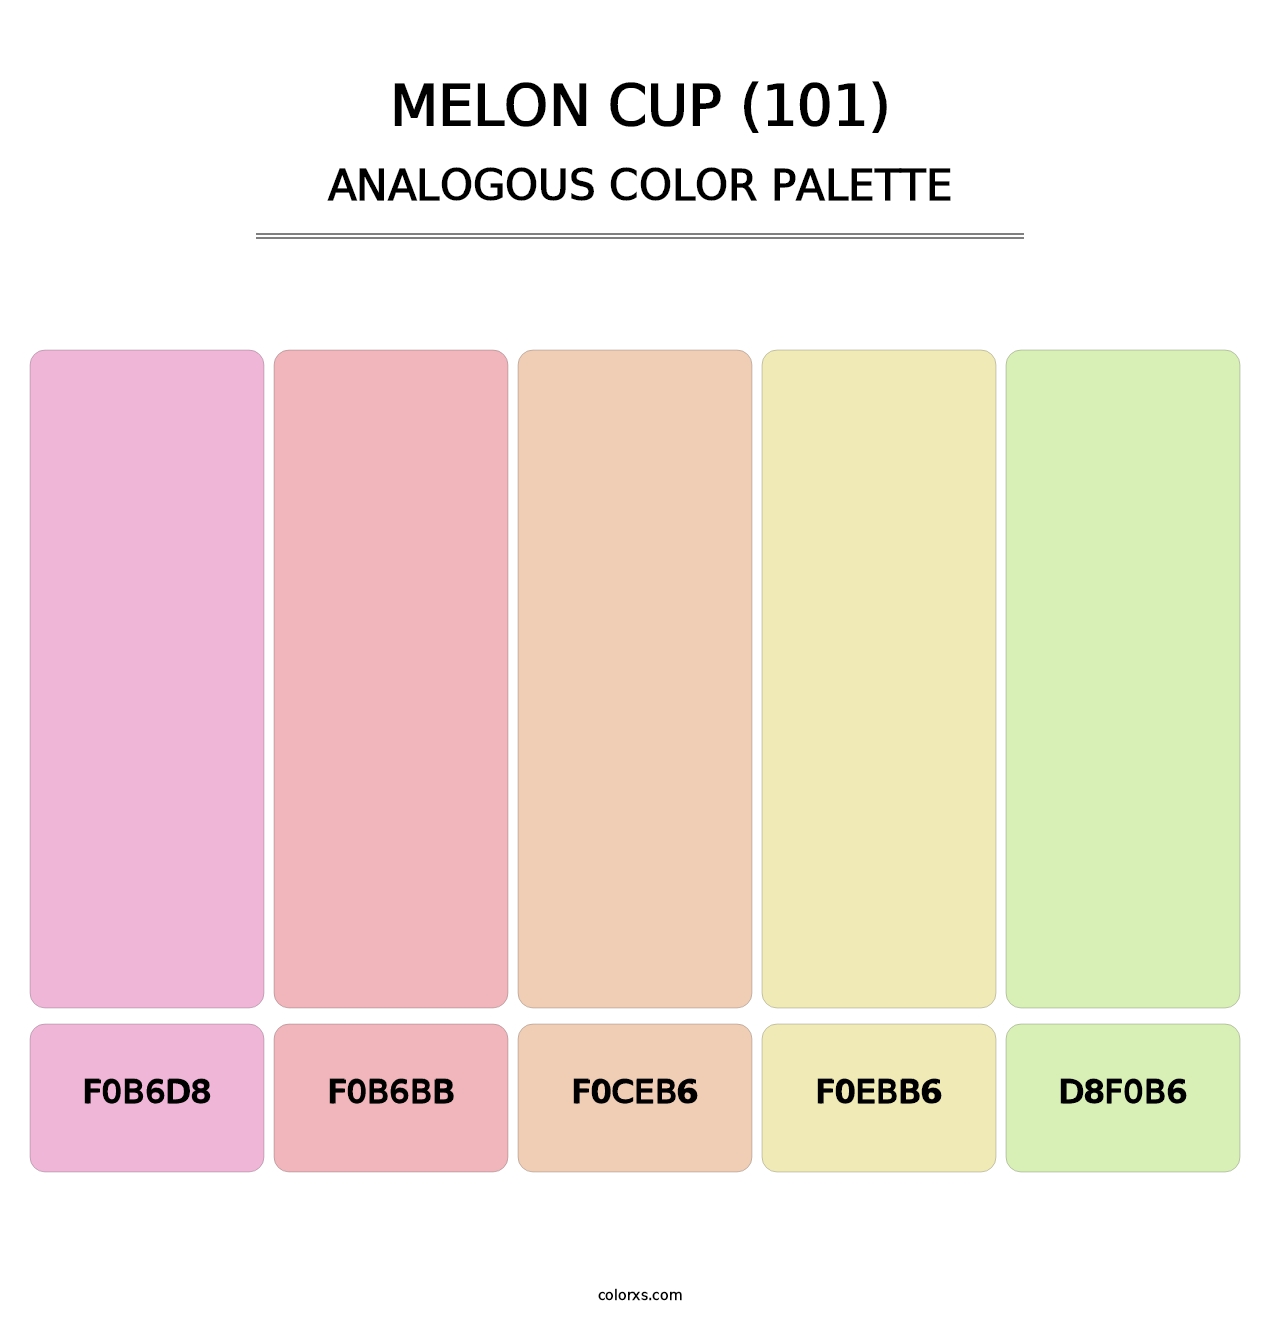 Melon Cup (101) - Analogous Color Palette